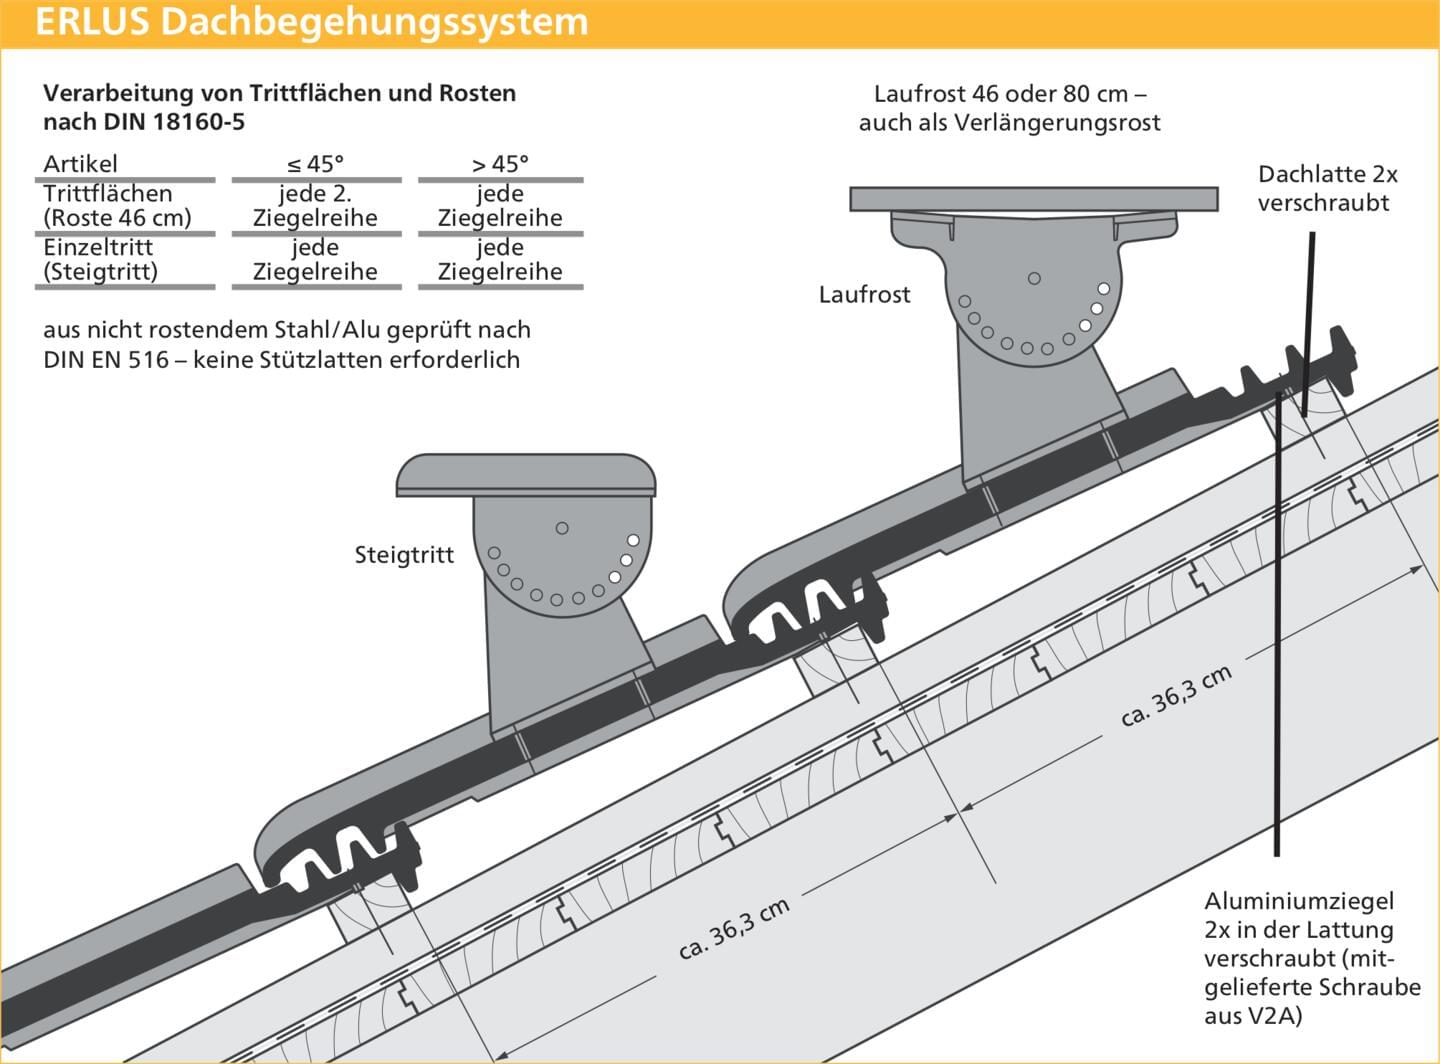 ERLUS Technische Zeichnung E 58 RS® - ERLUS Dachbegehungssystem | © ERLUS AG 2018